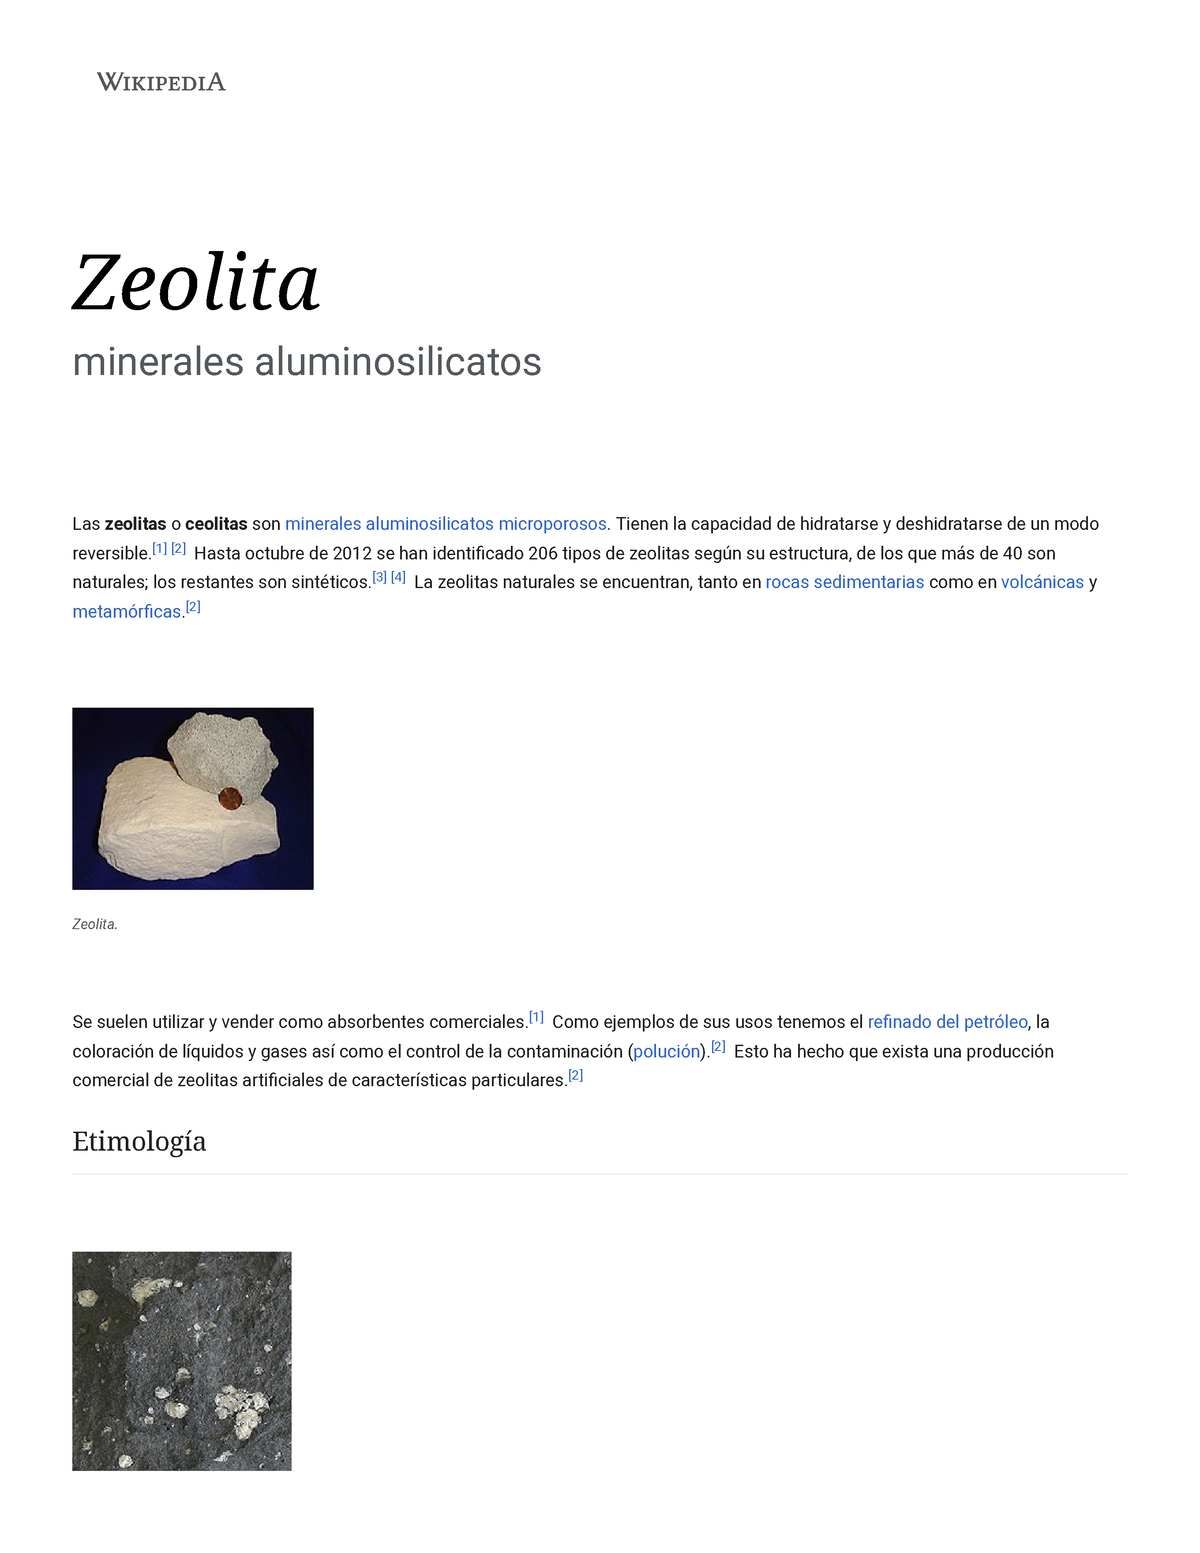 Zeolita - Wikipedia, la enciclopedia libre